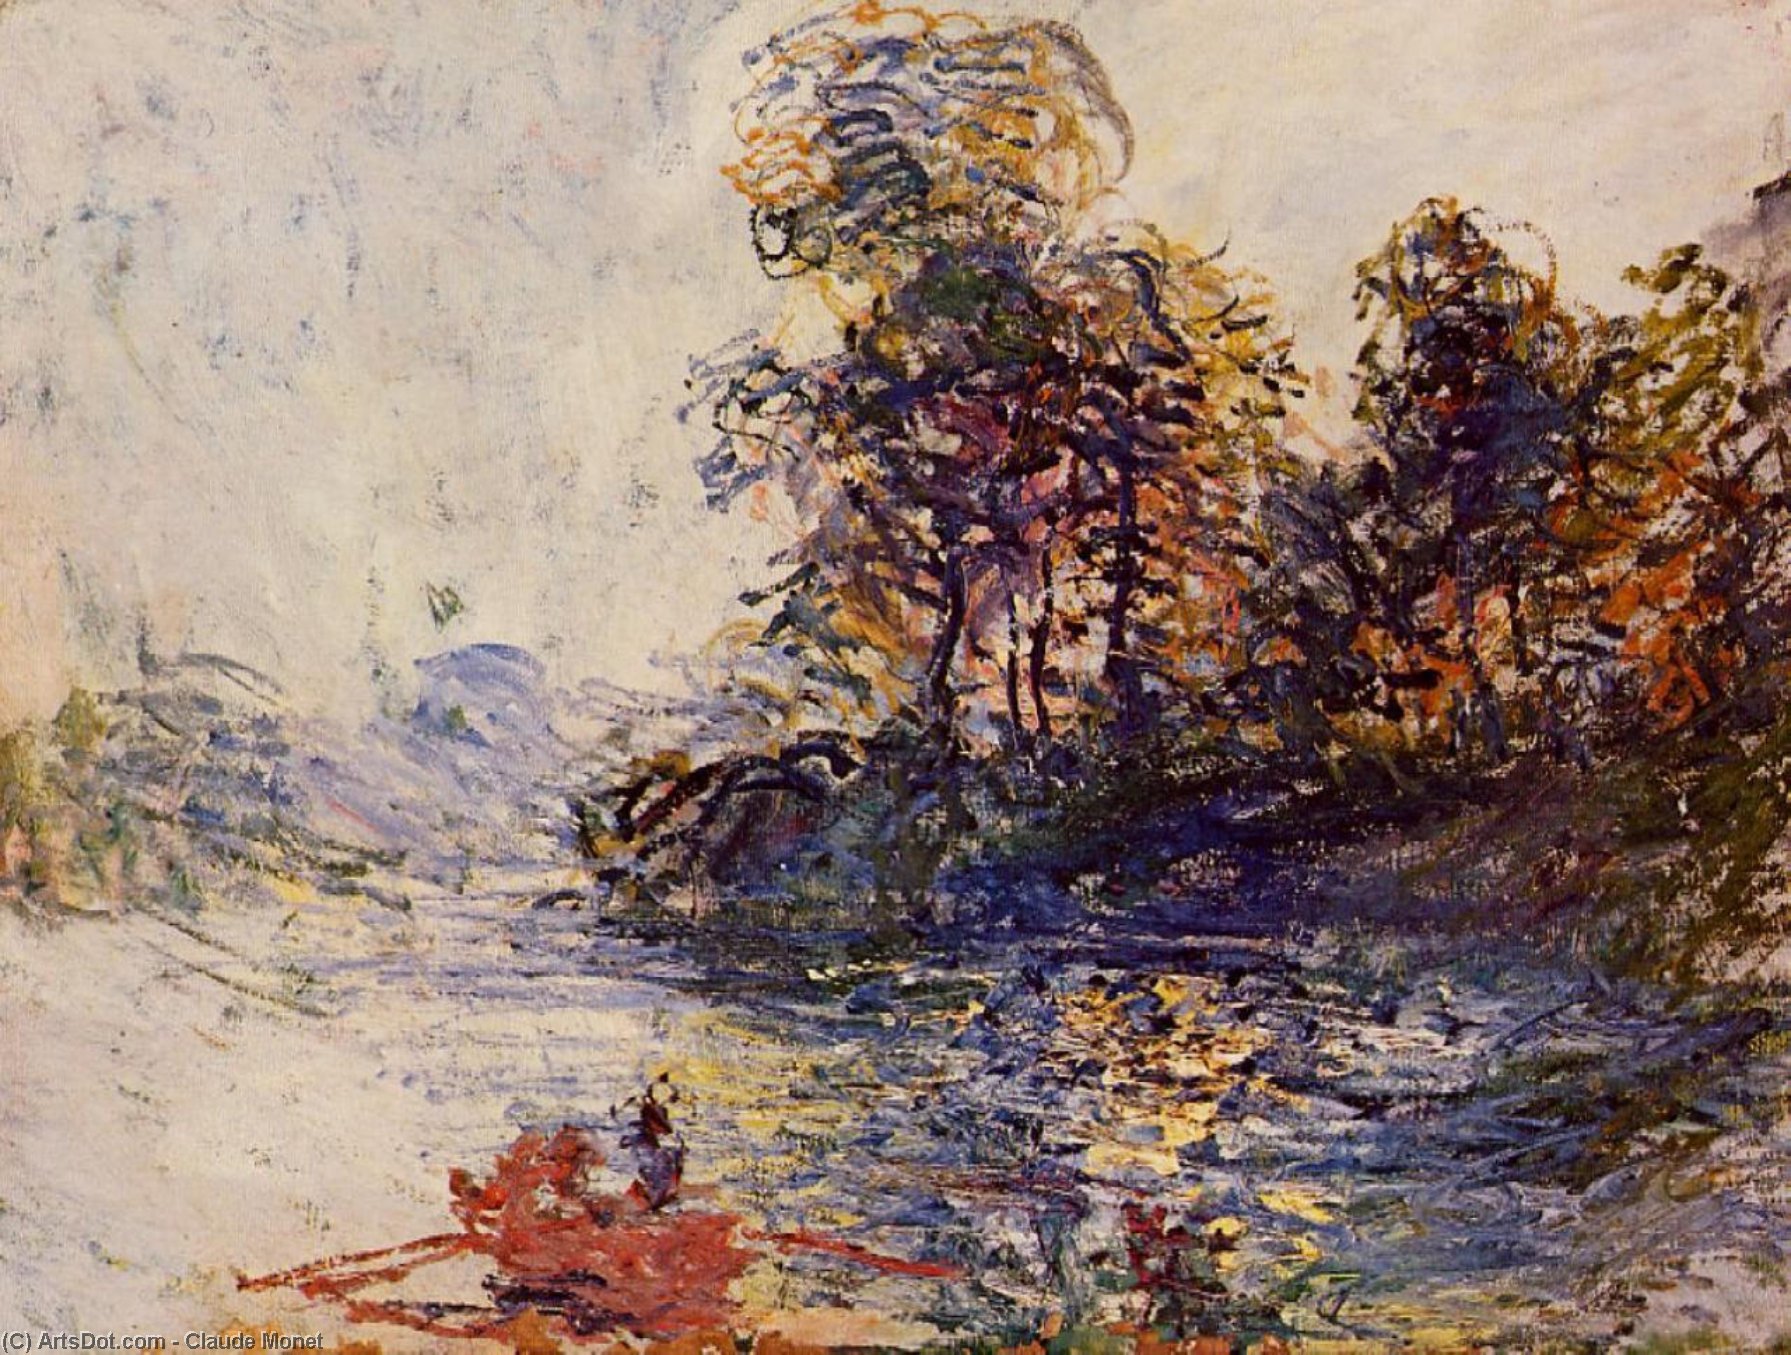 Compra Riproduzioni D'arte Del Museo Il fiume, 1881 di Claude Monet (1840-1926, France) | ArtsDot.com